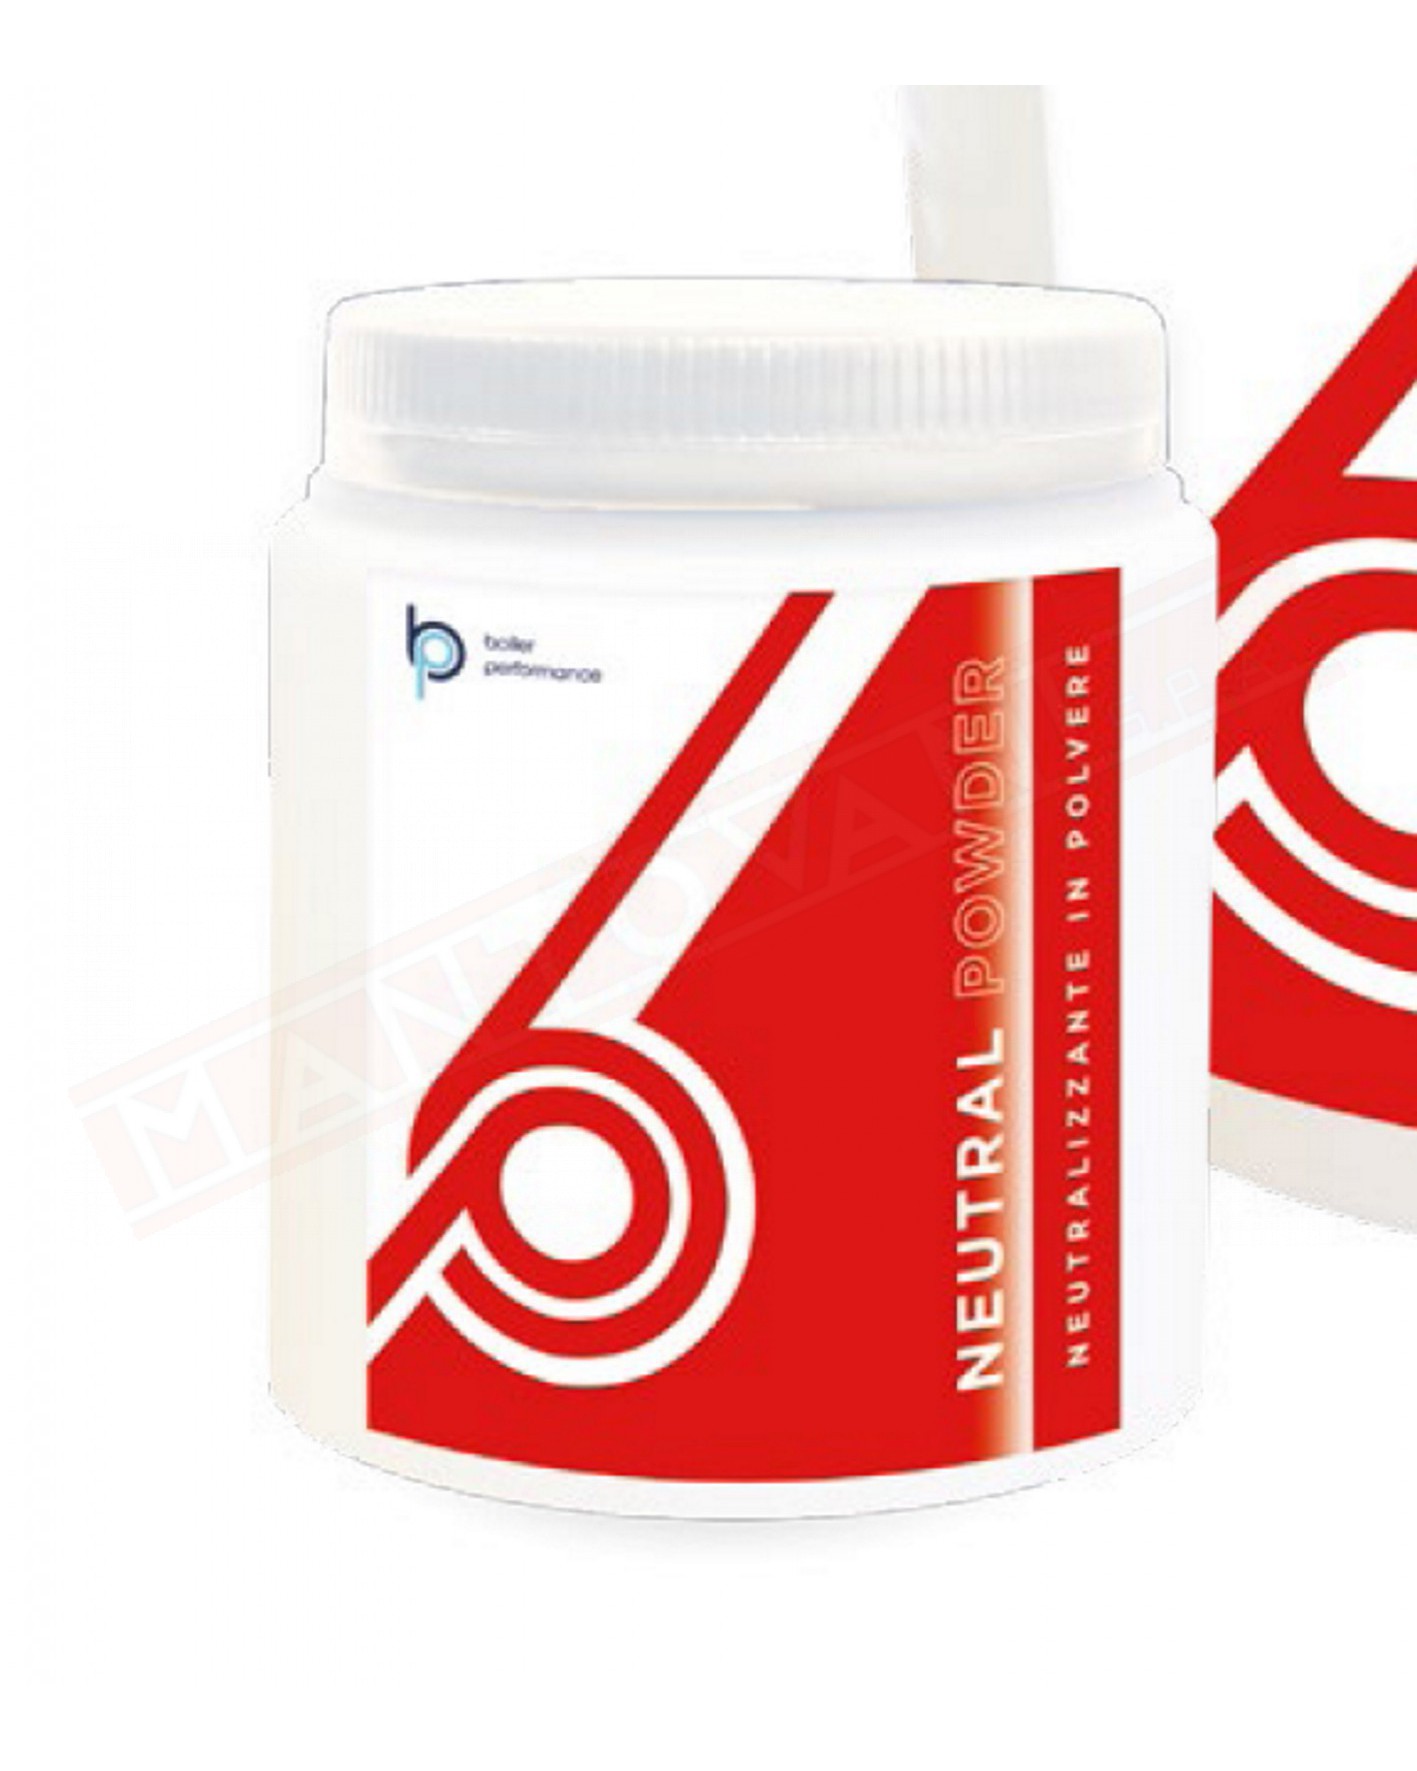 Manta Neutral Powder è un prodotto in polvere studiato per la neutralizzazione rapida e sicura dei liquidi a base acida